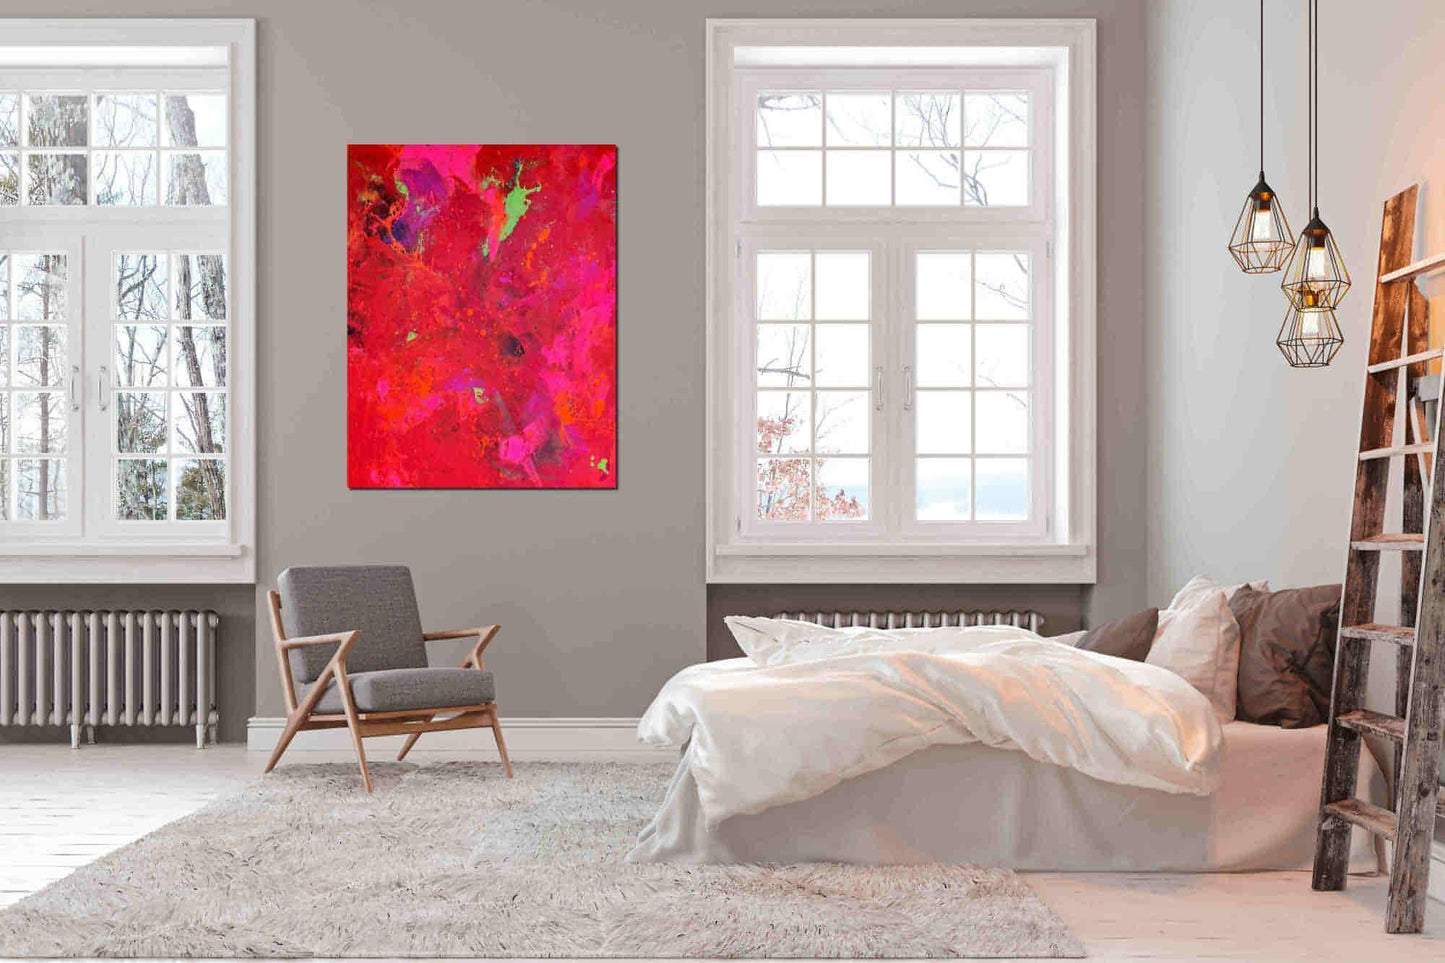 Auftragskunst, abstrakte Bilder, Rotes schwungvolles Gemälde als Auftragsbild - Leidenschaft und Energie,rote-grosse-bilder-kunstwerke, abstrakte Bilder kaufen ,